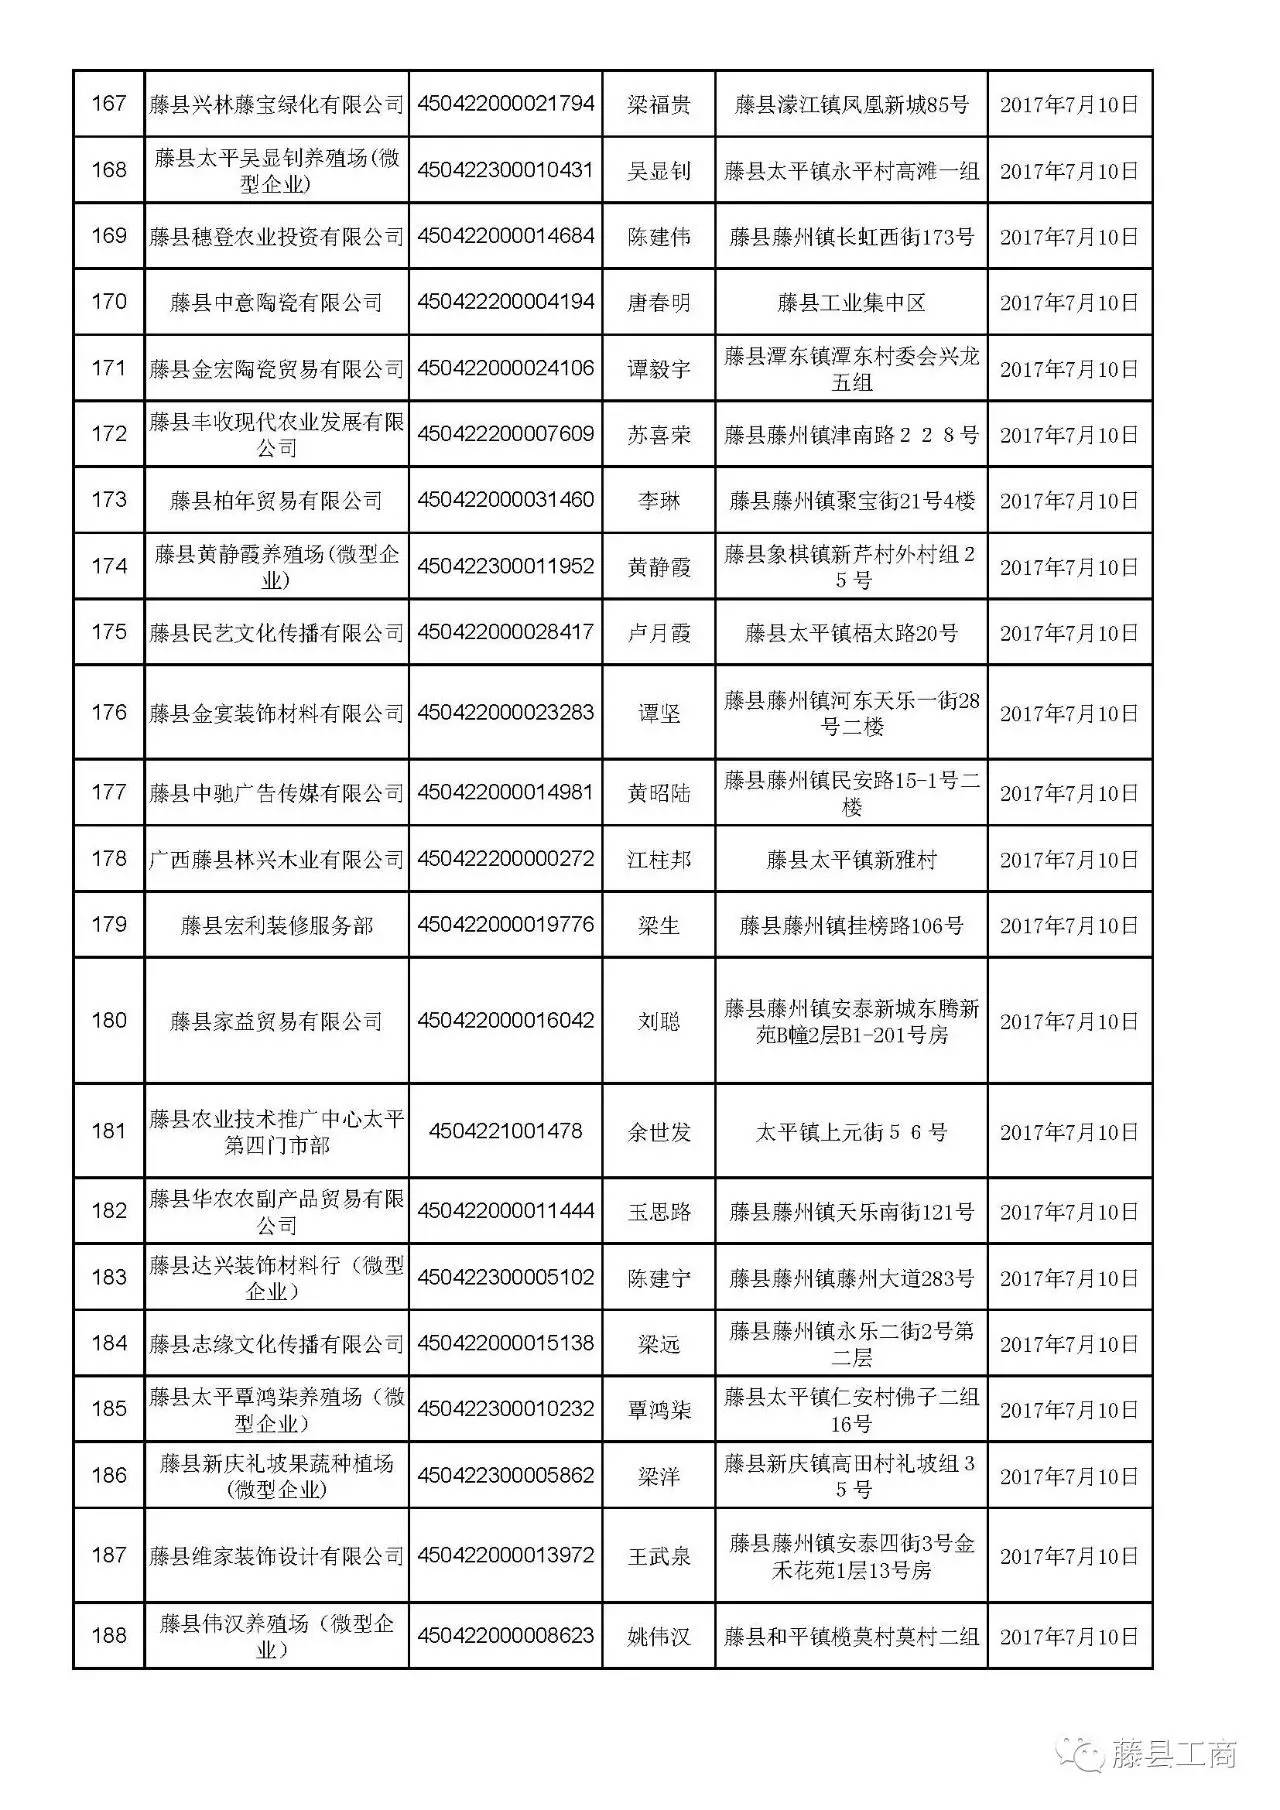 藤县工商行政管理局关于2016年度未年报企业